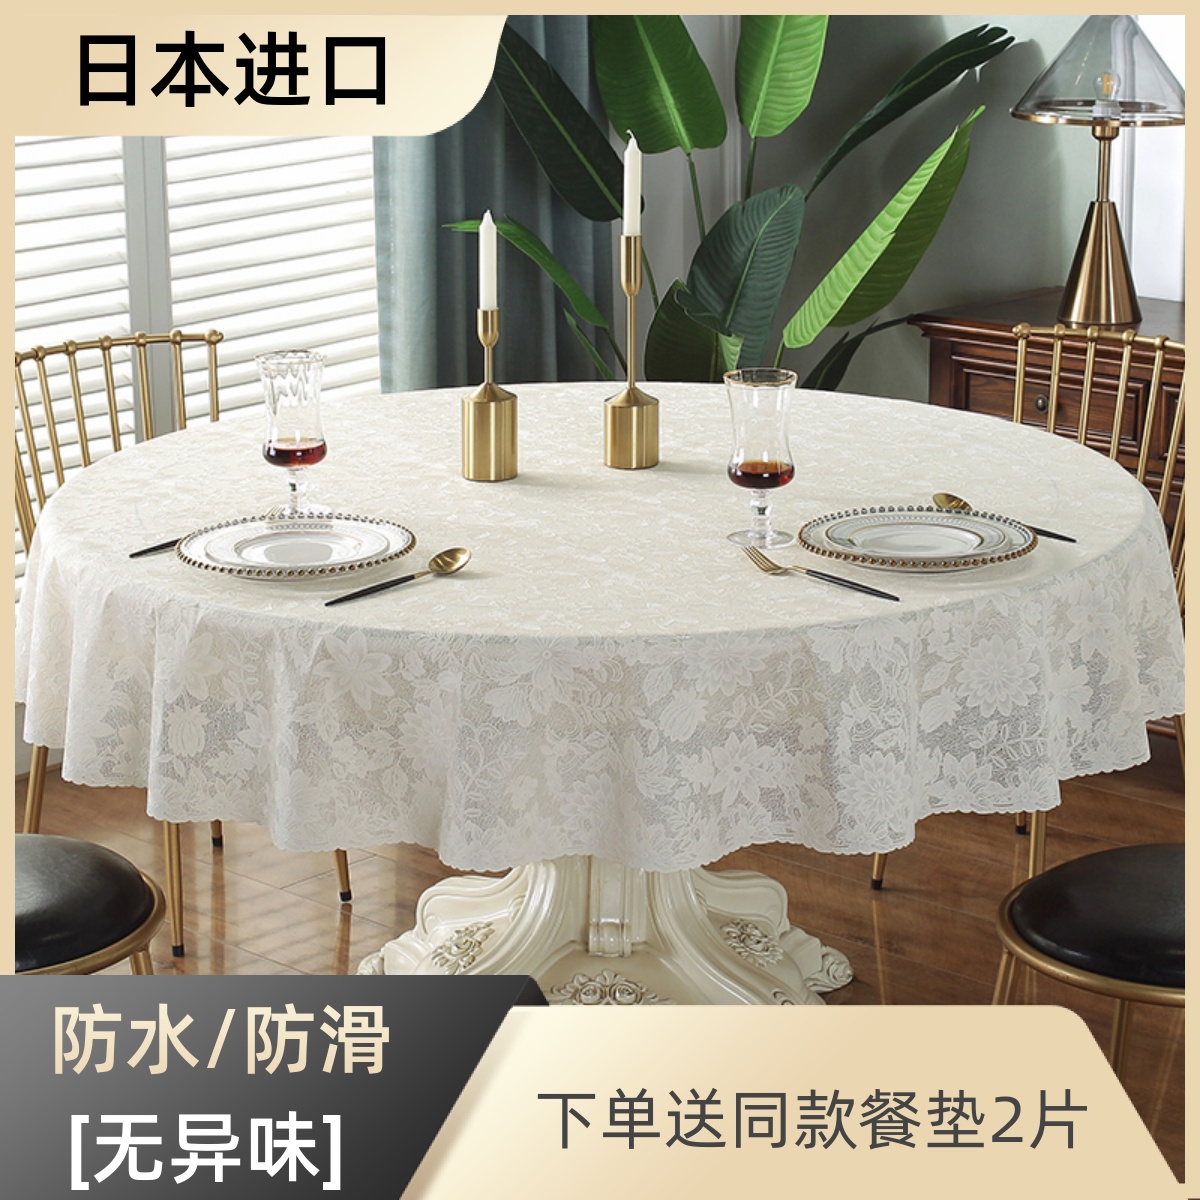 日本进口圆桌桌布pvc家用防水防烫防油免洗台布欧式1.5大圆形桌垫